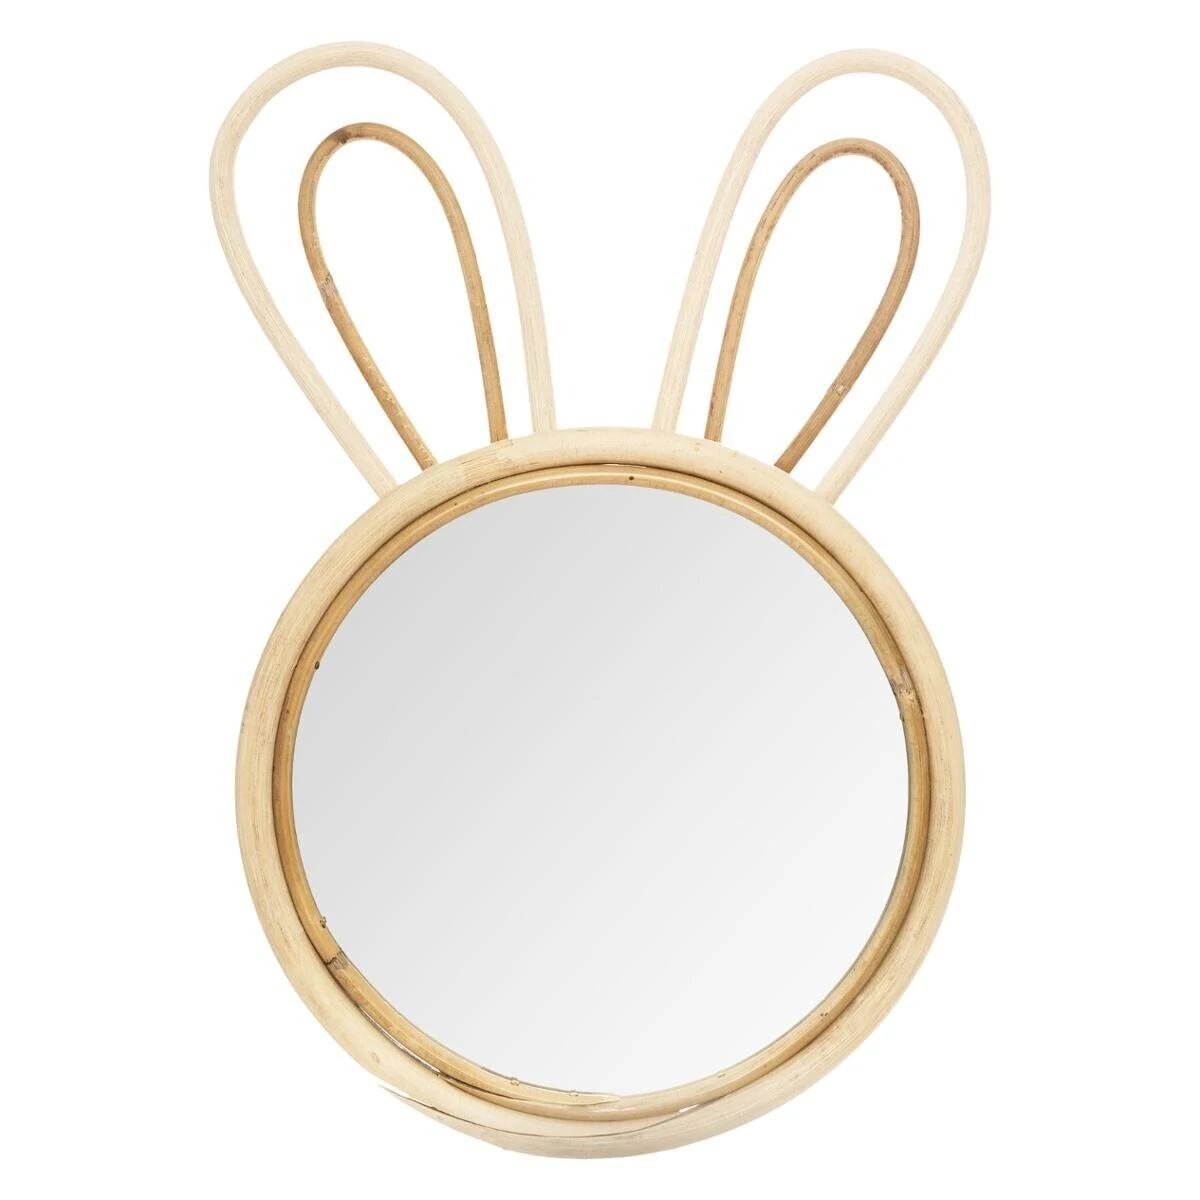 Rattan mirror, bunny 